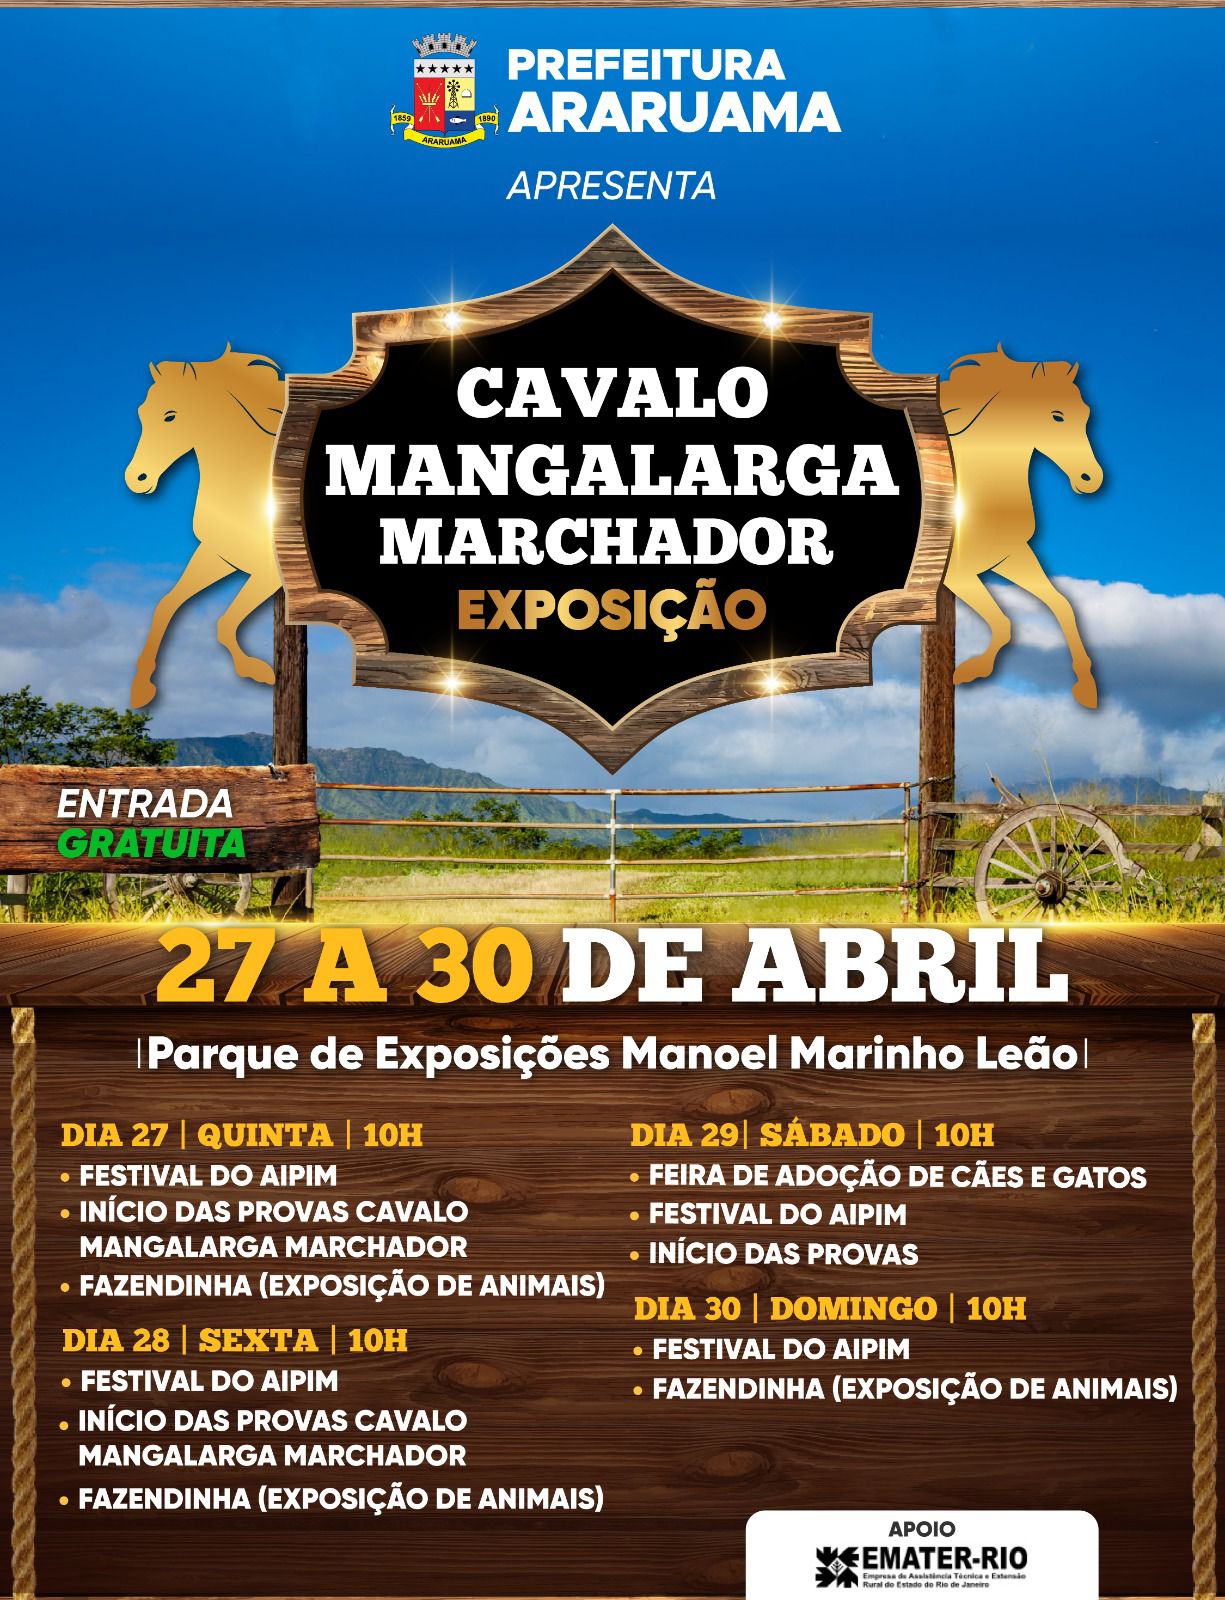 Prefeitura de Araruama vai realizar a tradicional Exposição do Cavalo Mangalarga Marchador 2023